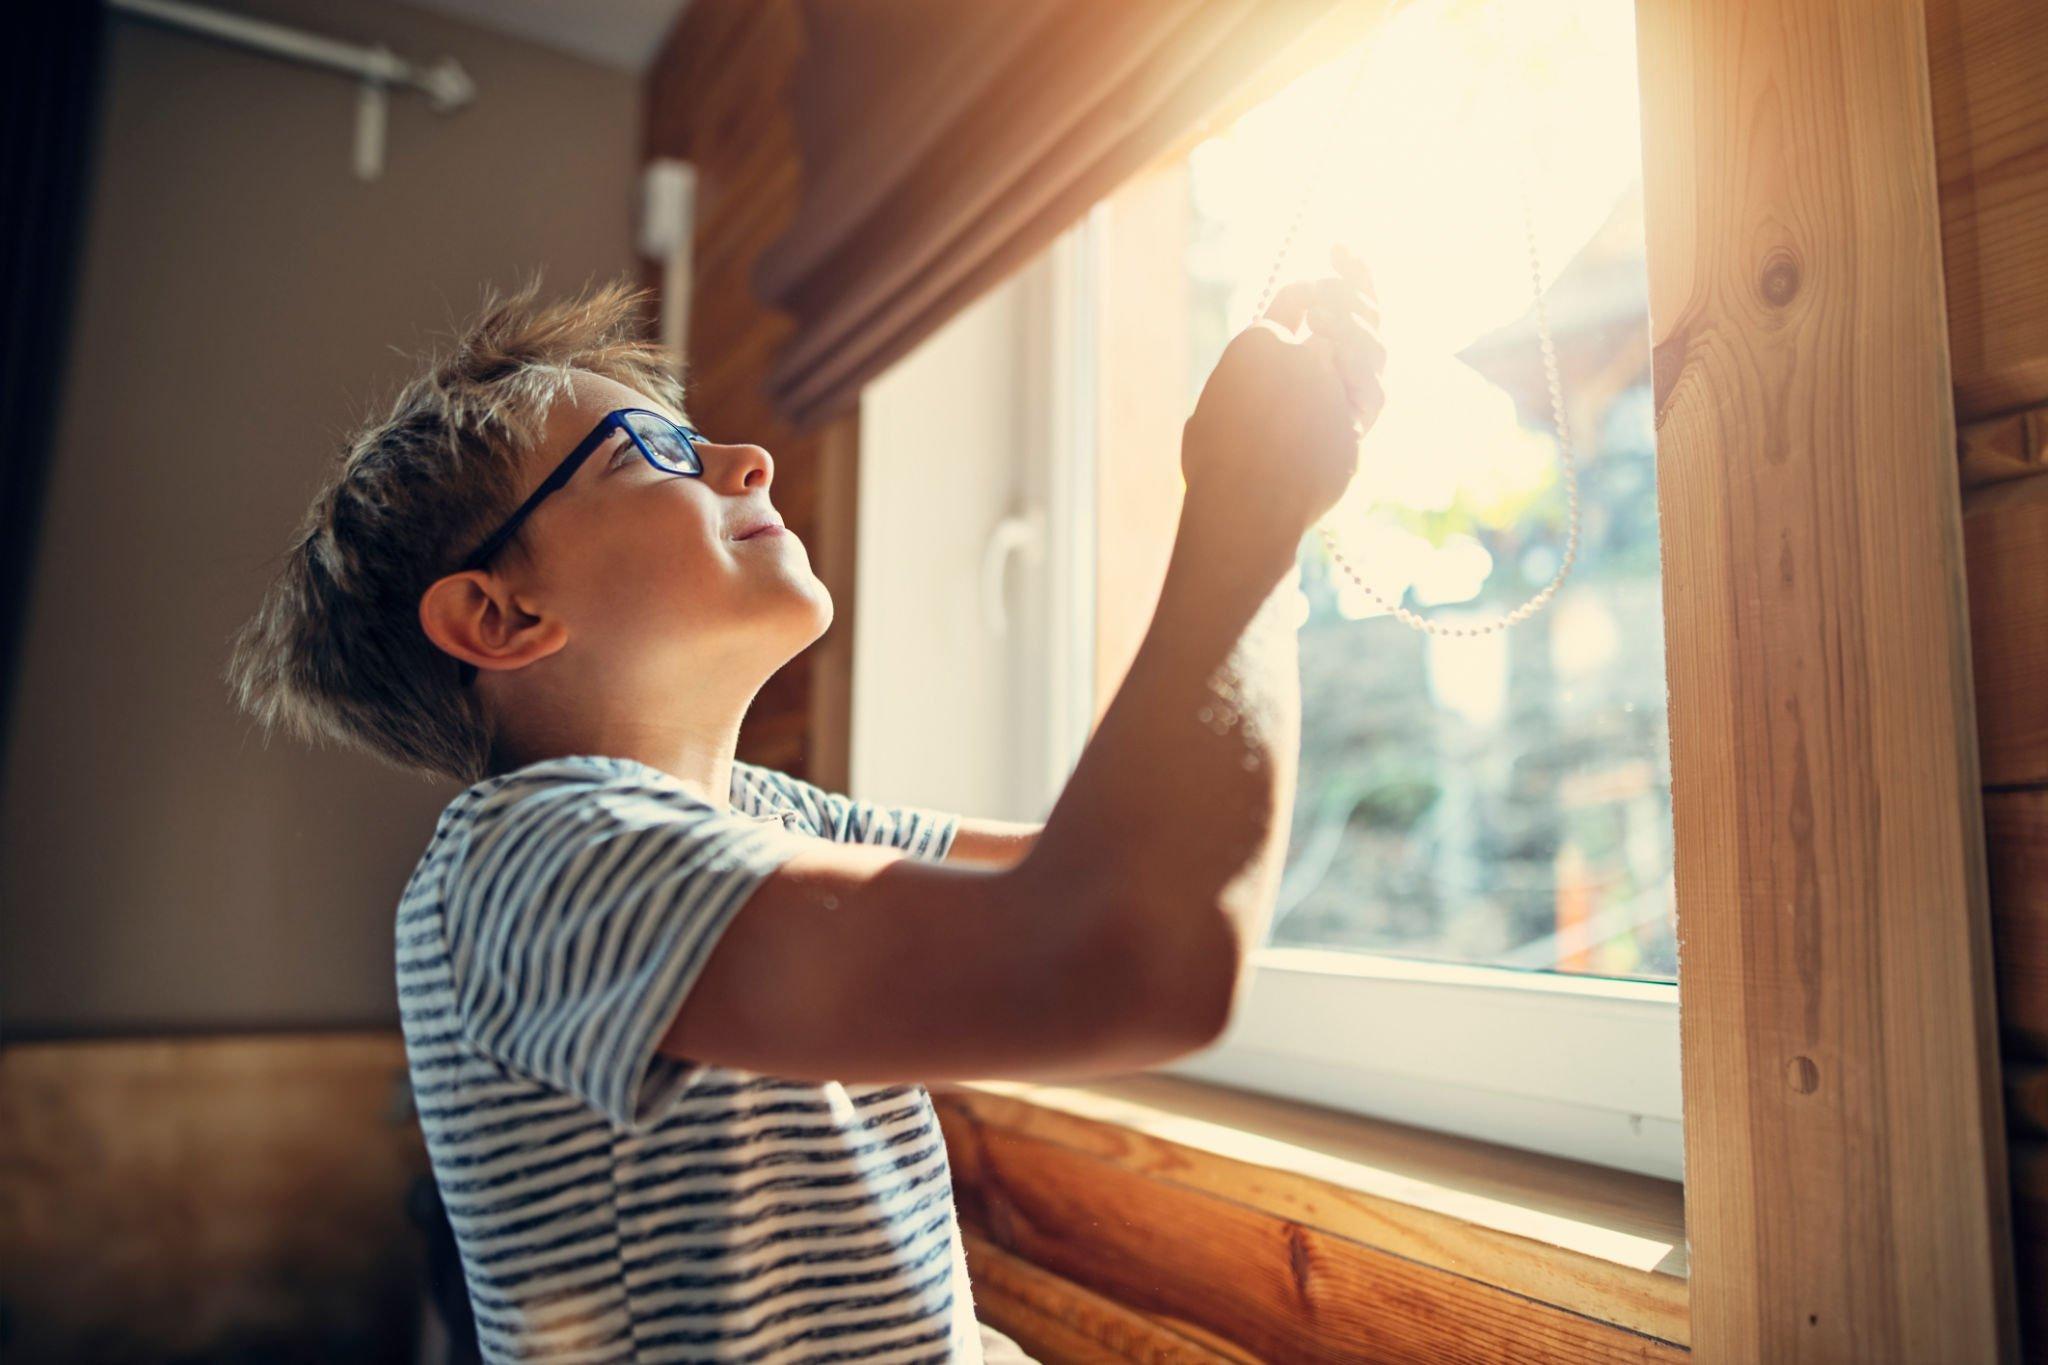 A boy blocking the natural light through basement window blinds